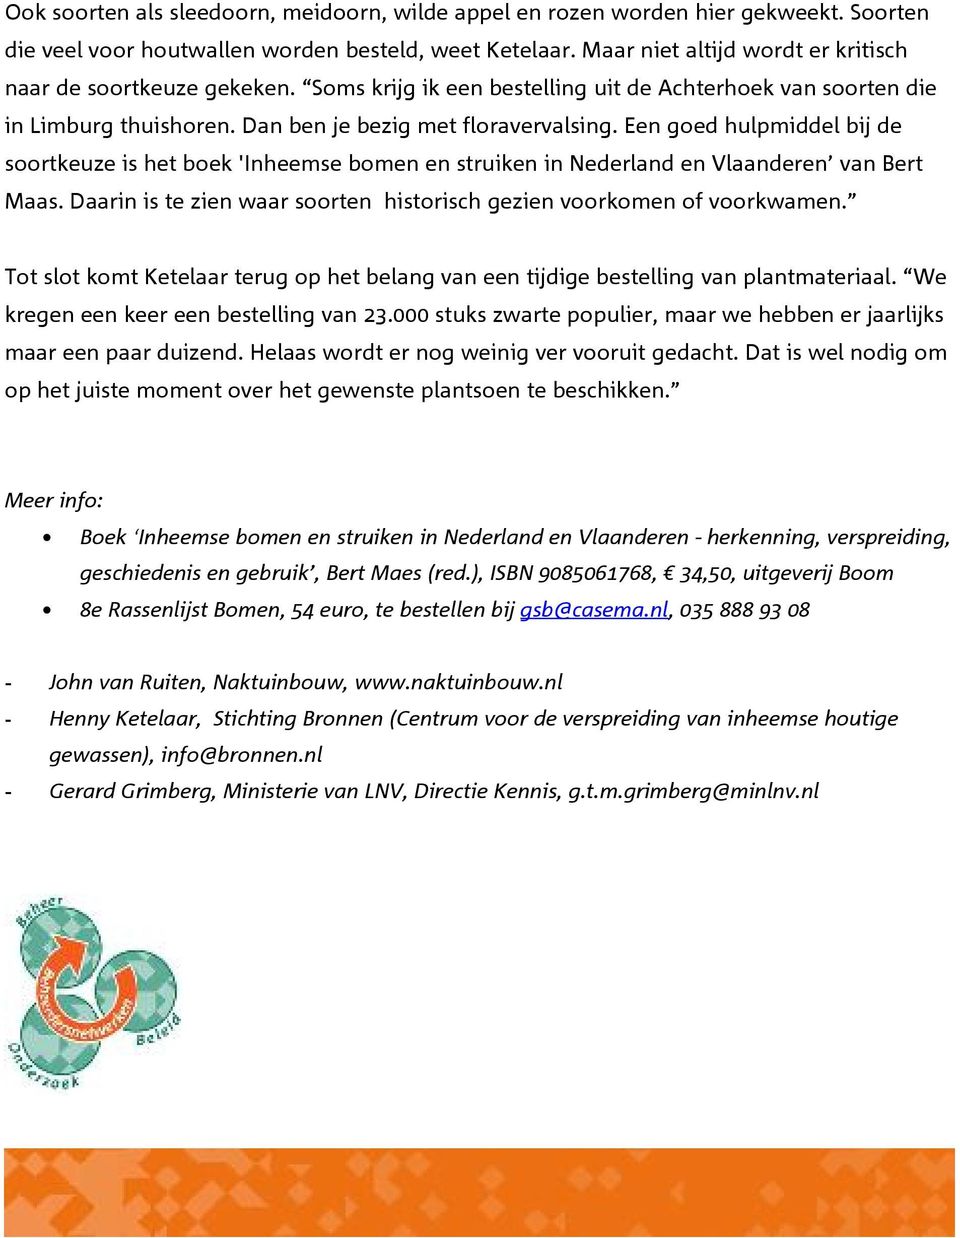 Een goed hulpmiddel bij de soortkeuze is het boek 'Inheemse bomen en struiken in Nederland en Vlaanderen van Bert Maas. Daarin is te zien waar soorten historisch gezien voorkomen of voorkwamen.